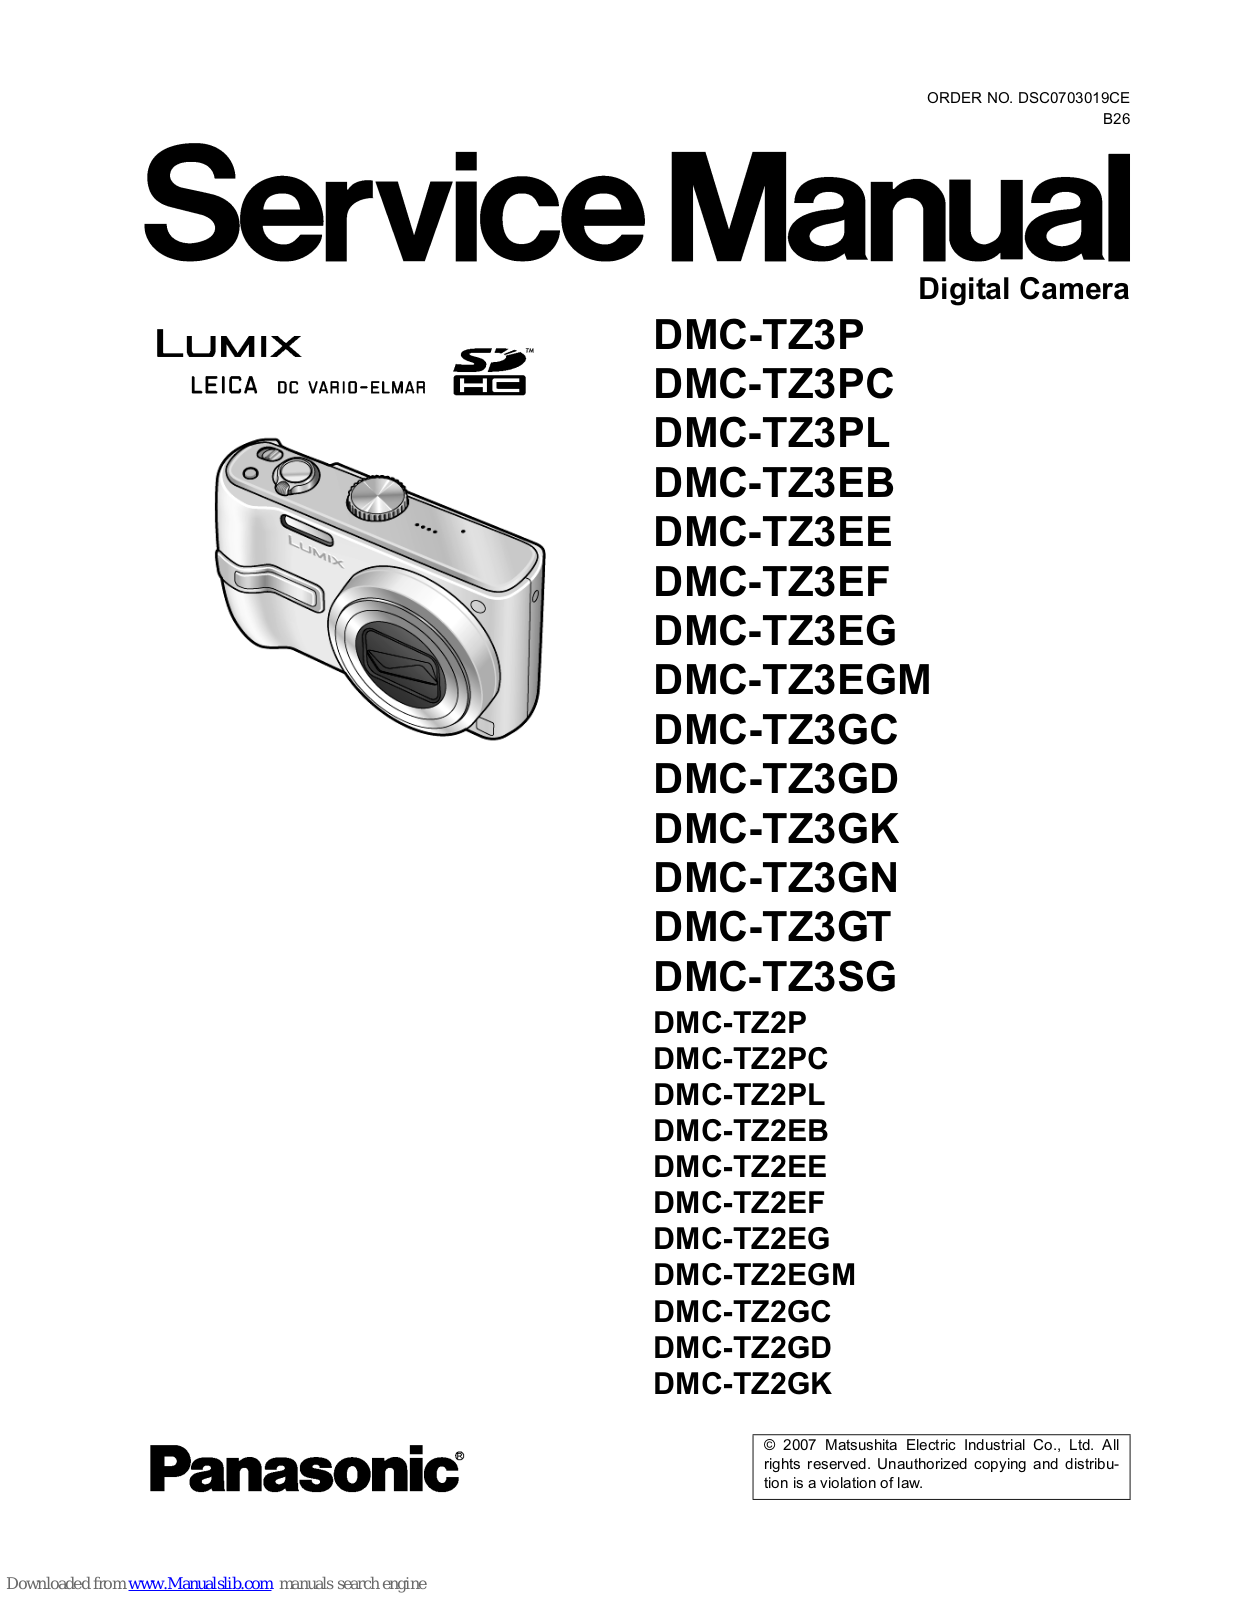 Panasonic Lumix DMC-TZ3EF, Lumix DMC-TZ3EG, Lumix DMC-TZ3EGM, Lumix DMC-TZ3GC, Lumix DMC-TZ3GD Service Manual